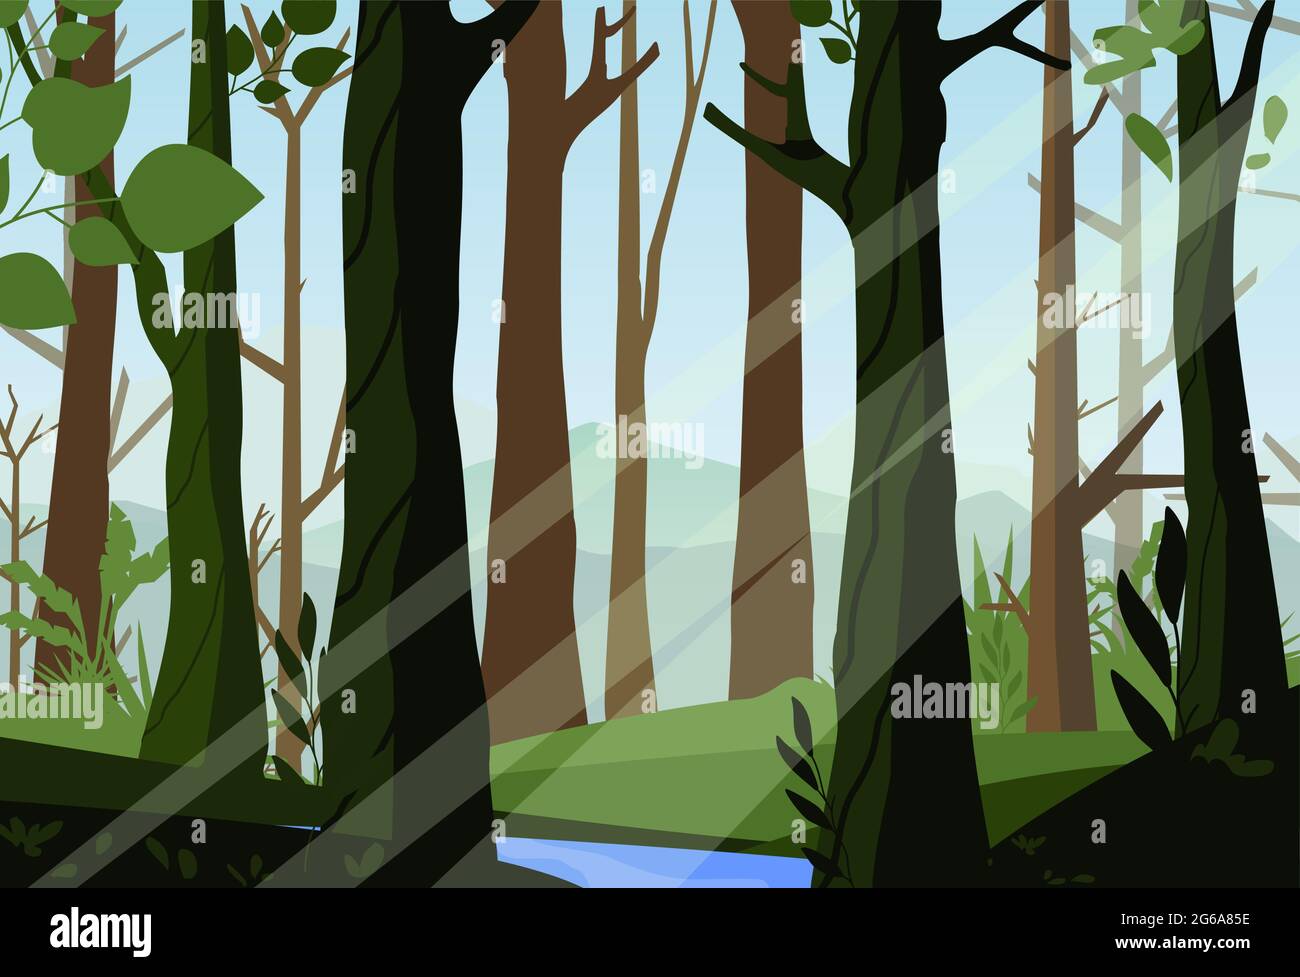 Vektor-Illustration des Sonnenuntergangs im Wald, schöner Wald, Licht durch die Bäume im Wald, Morgenzeit, Naturlandschaft im flachen Stil. Stock Vektor